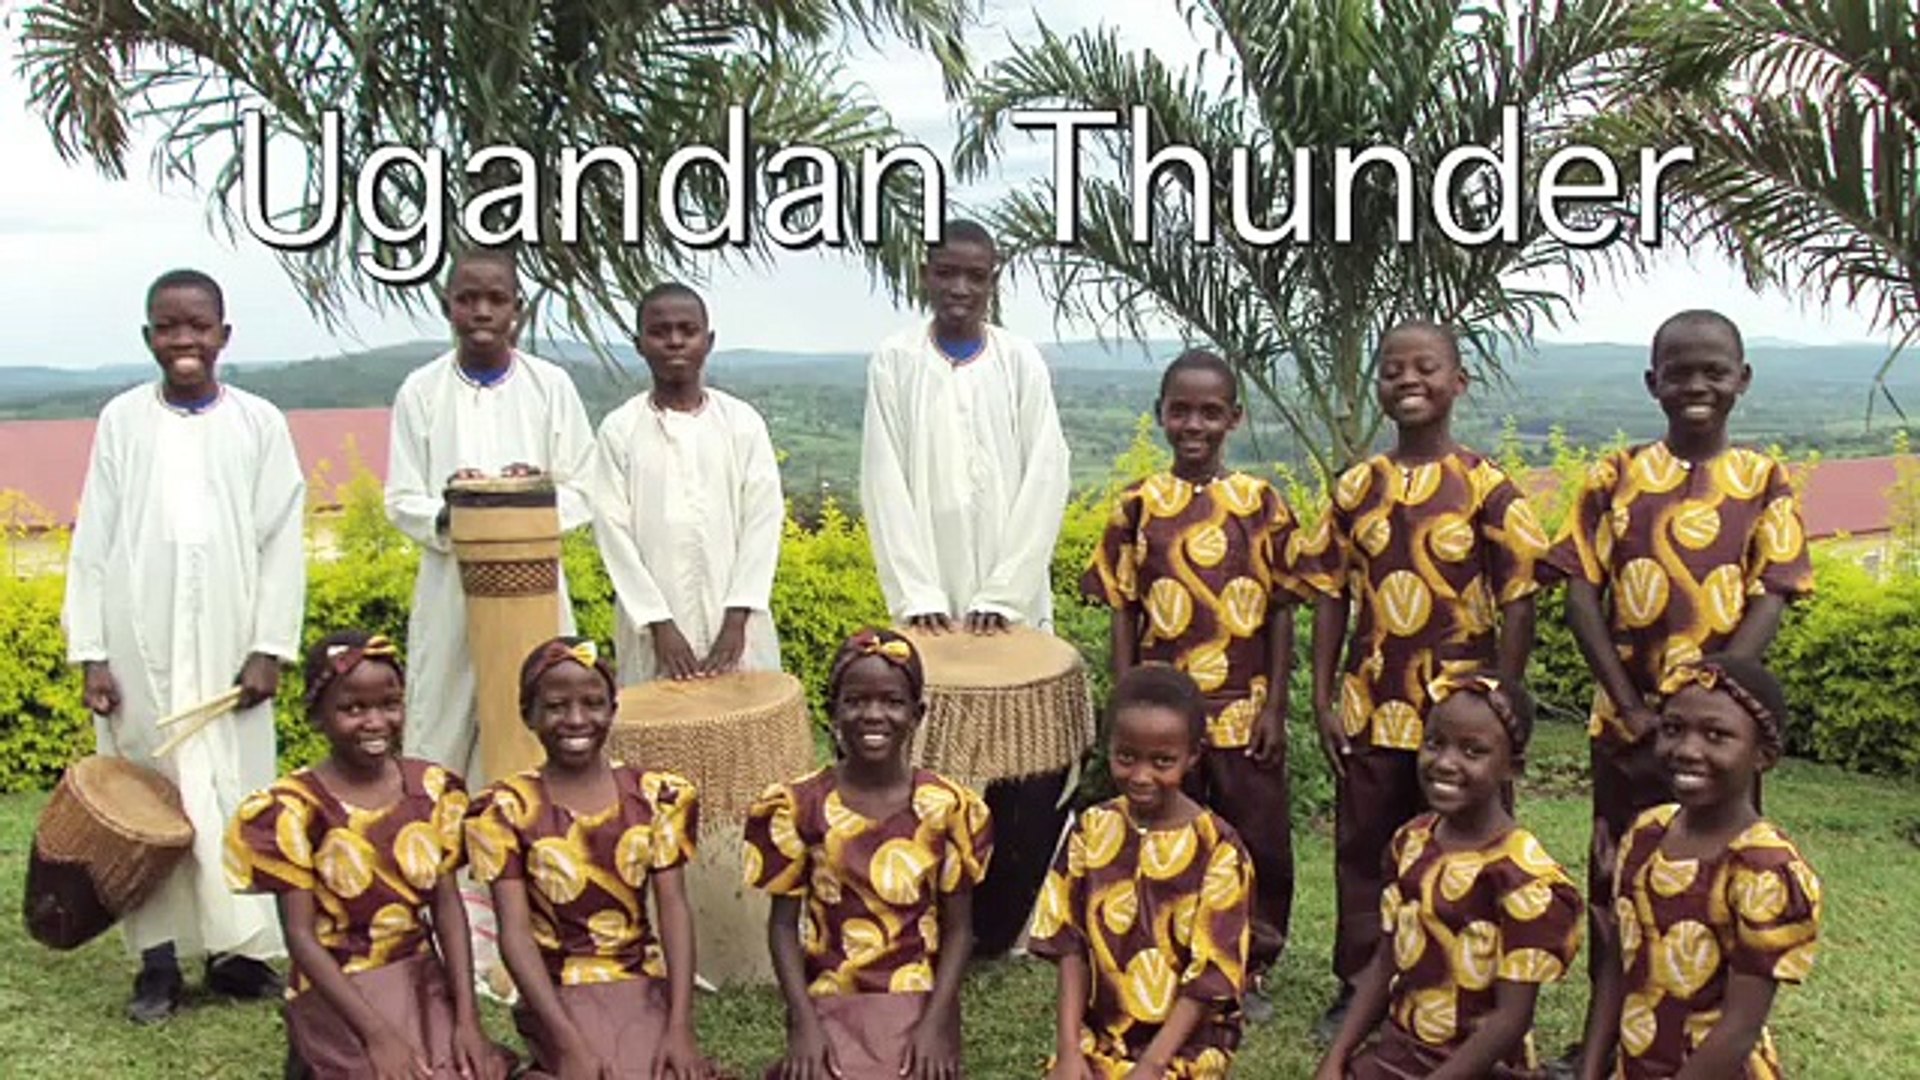 Ugandan Thunder